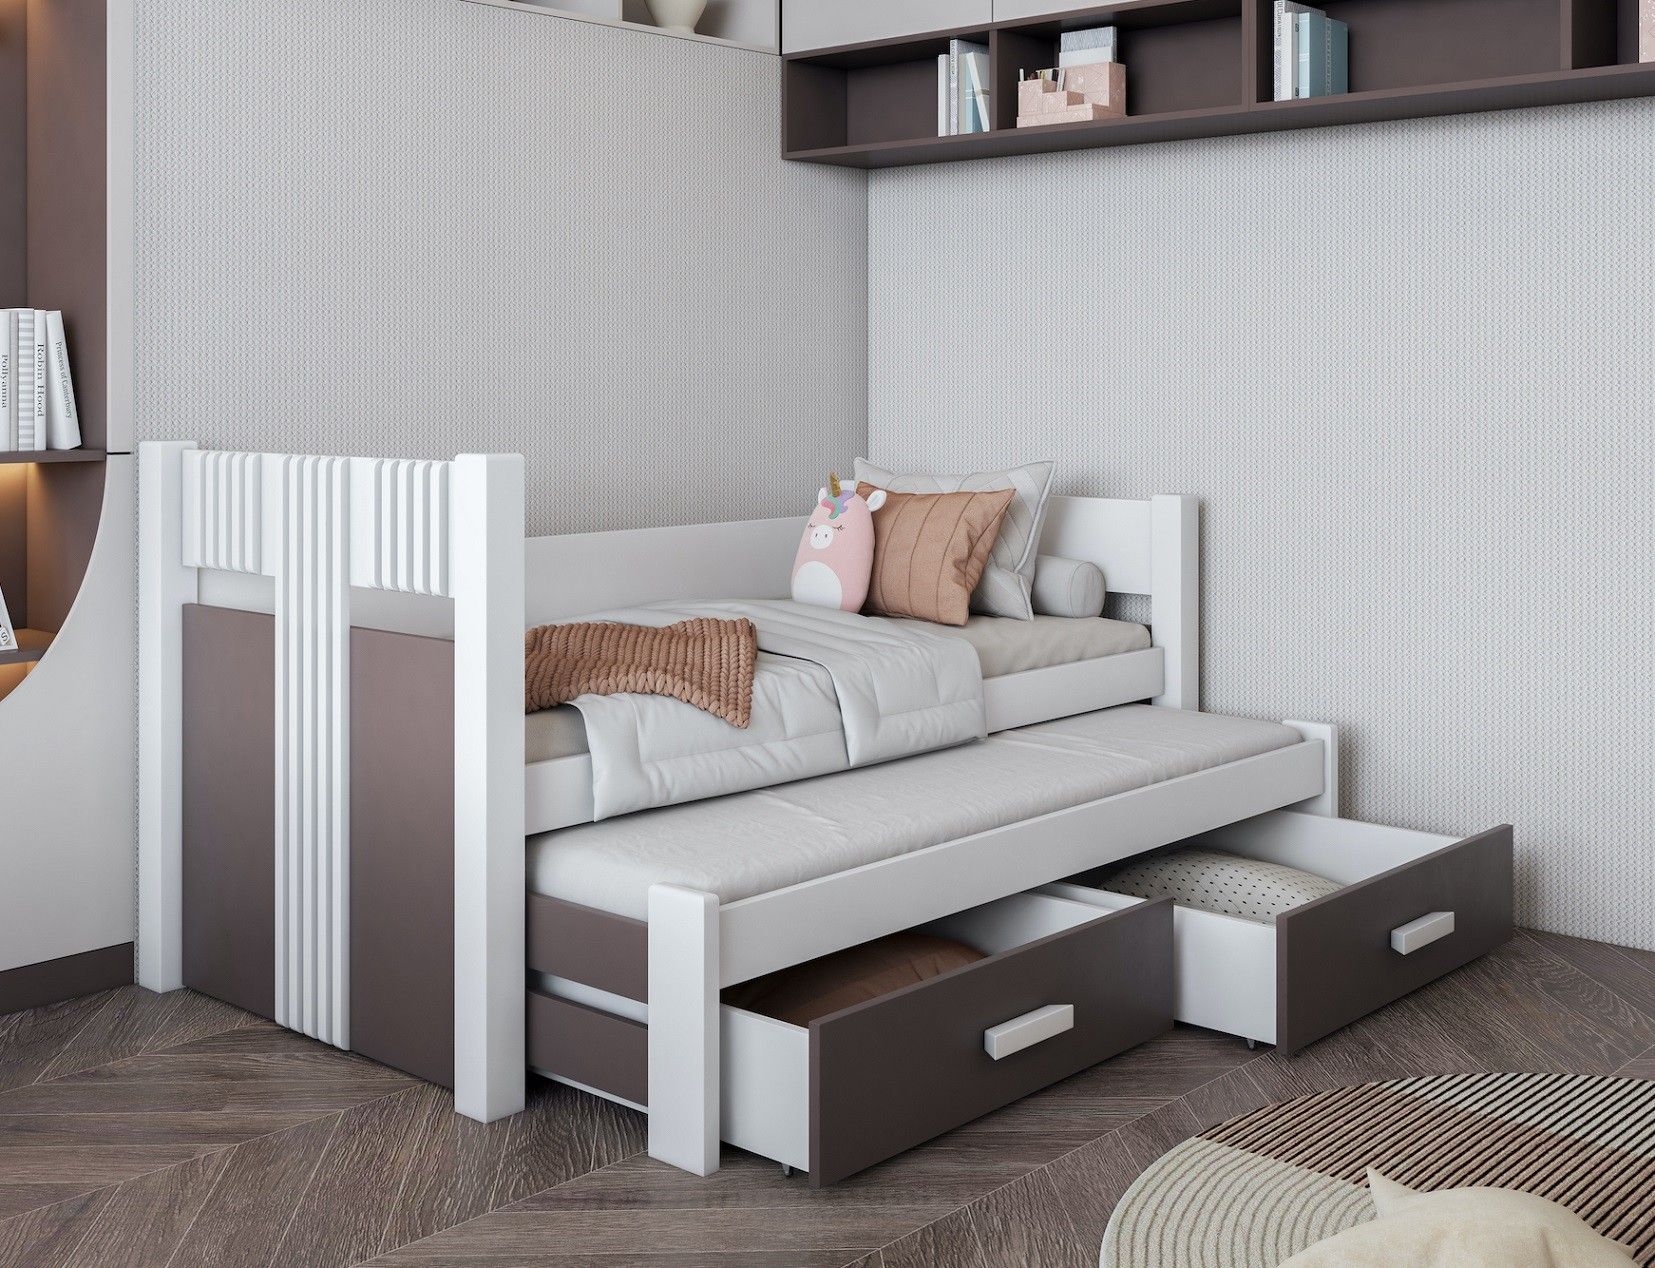 Łóżko piętrowe niskie KOSMO 80x200 MEBLOBED 2x szuflady w cenie